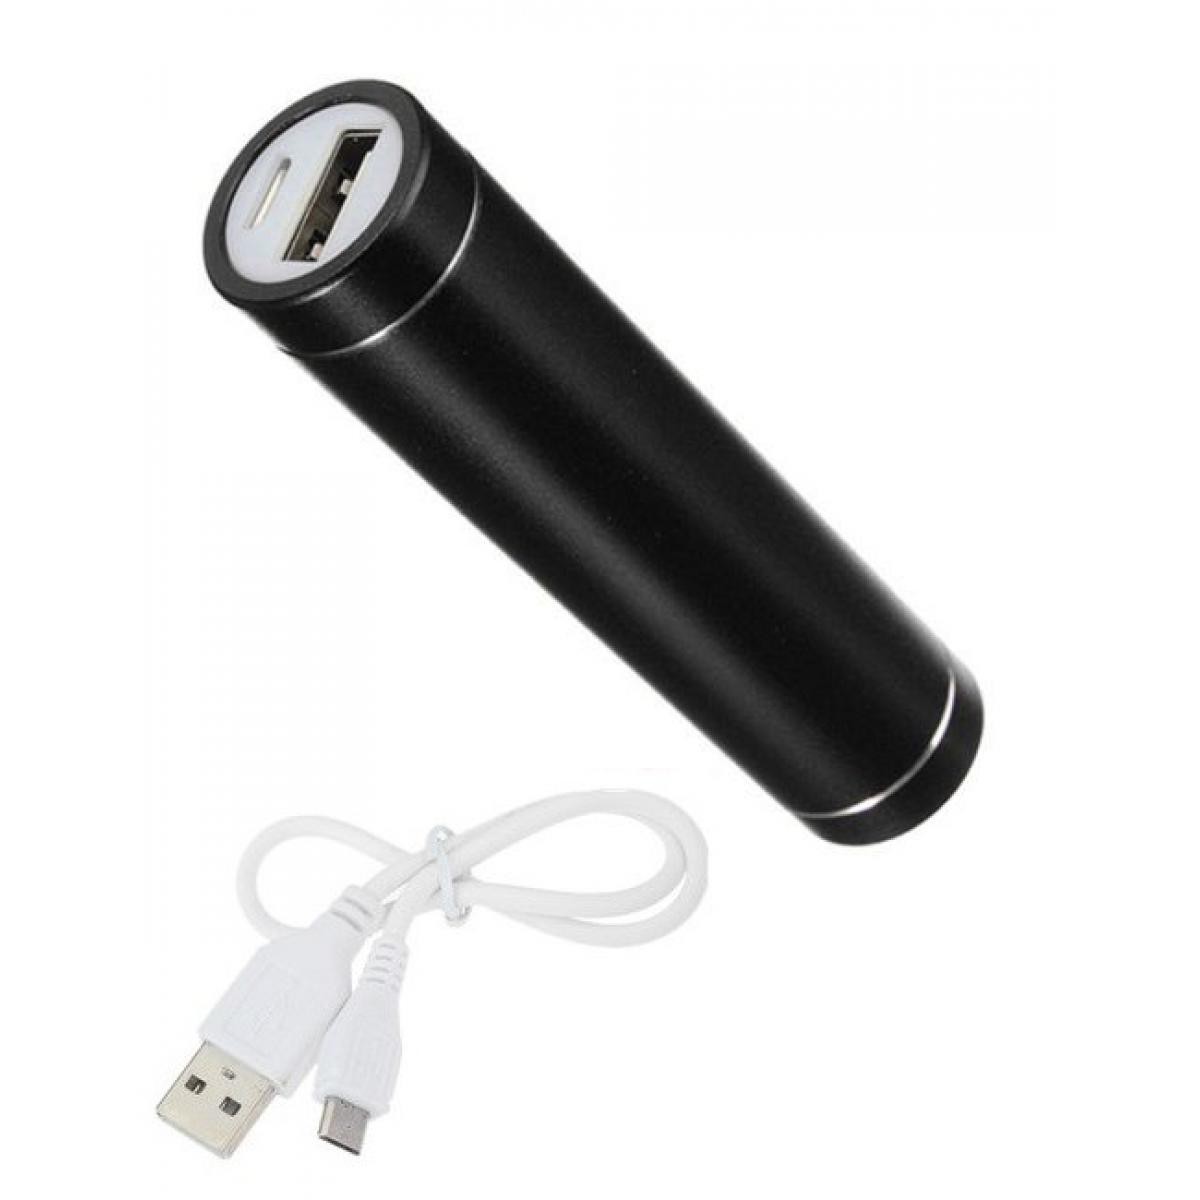 Shot - Batterie Chargeur Externe pour "OPPO Find X2 Neo" Power Bank 2600mAh avec Cable USB/Mirco USB Secours Telephone (NOIR) - Chargeur secteur téléphone